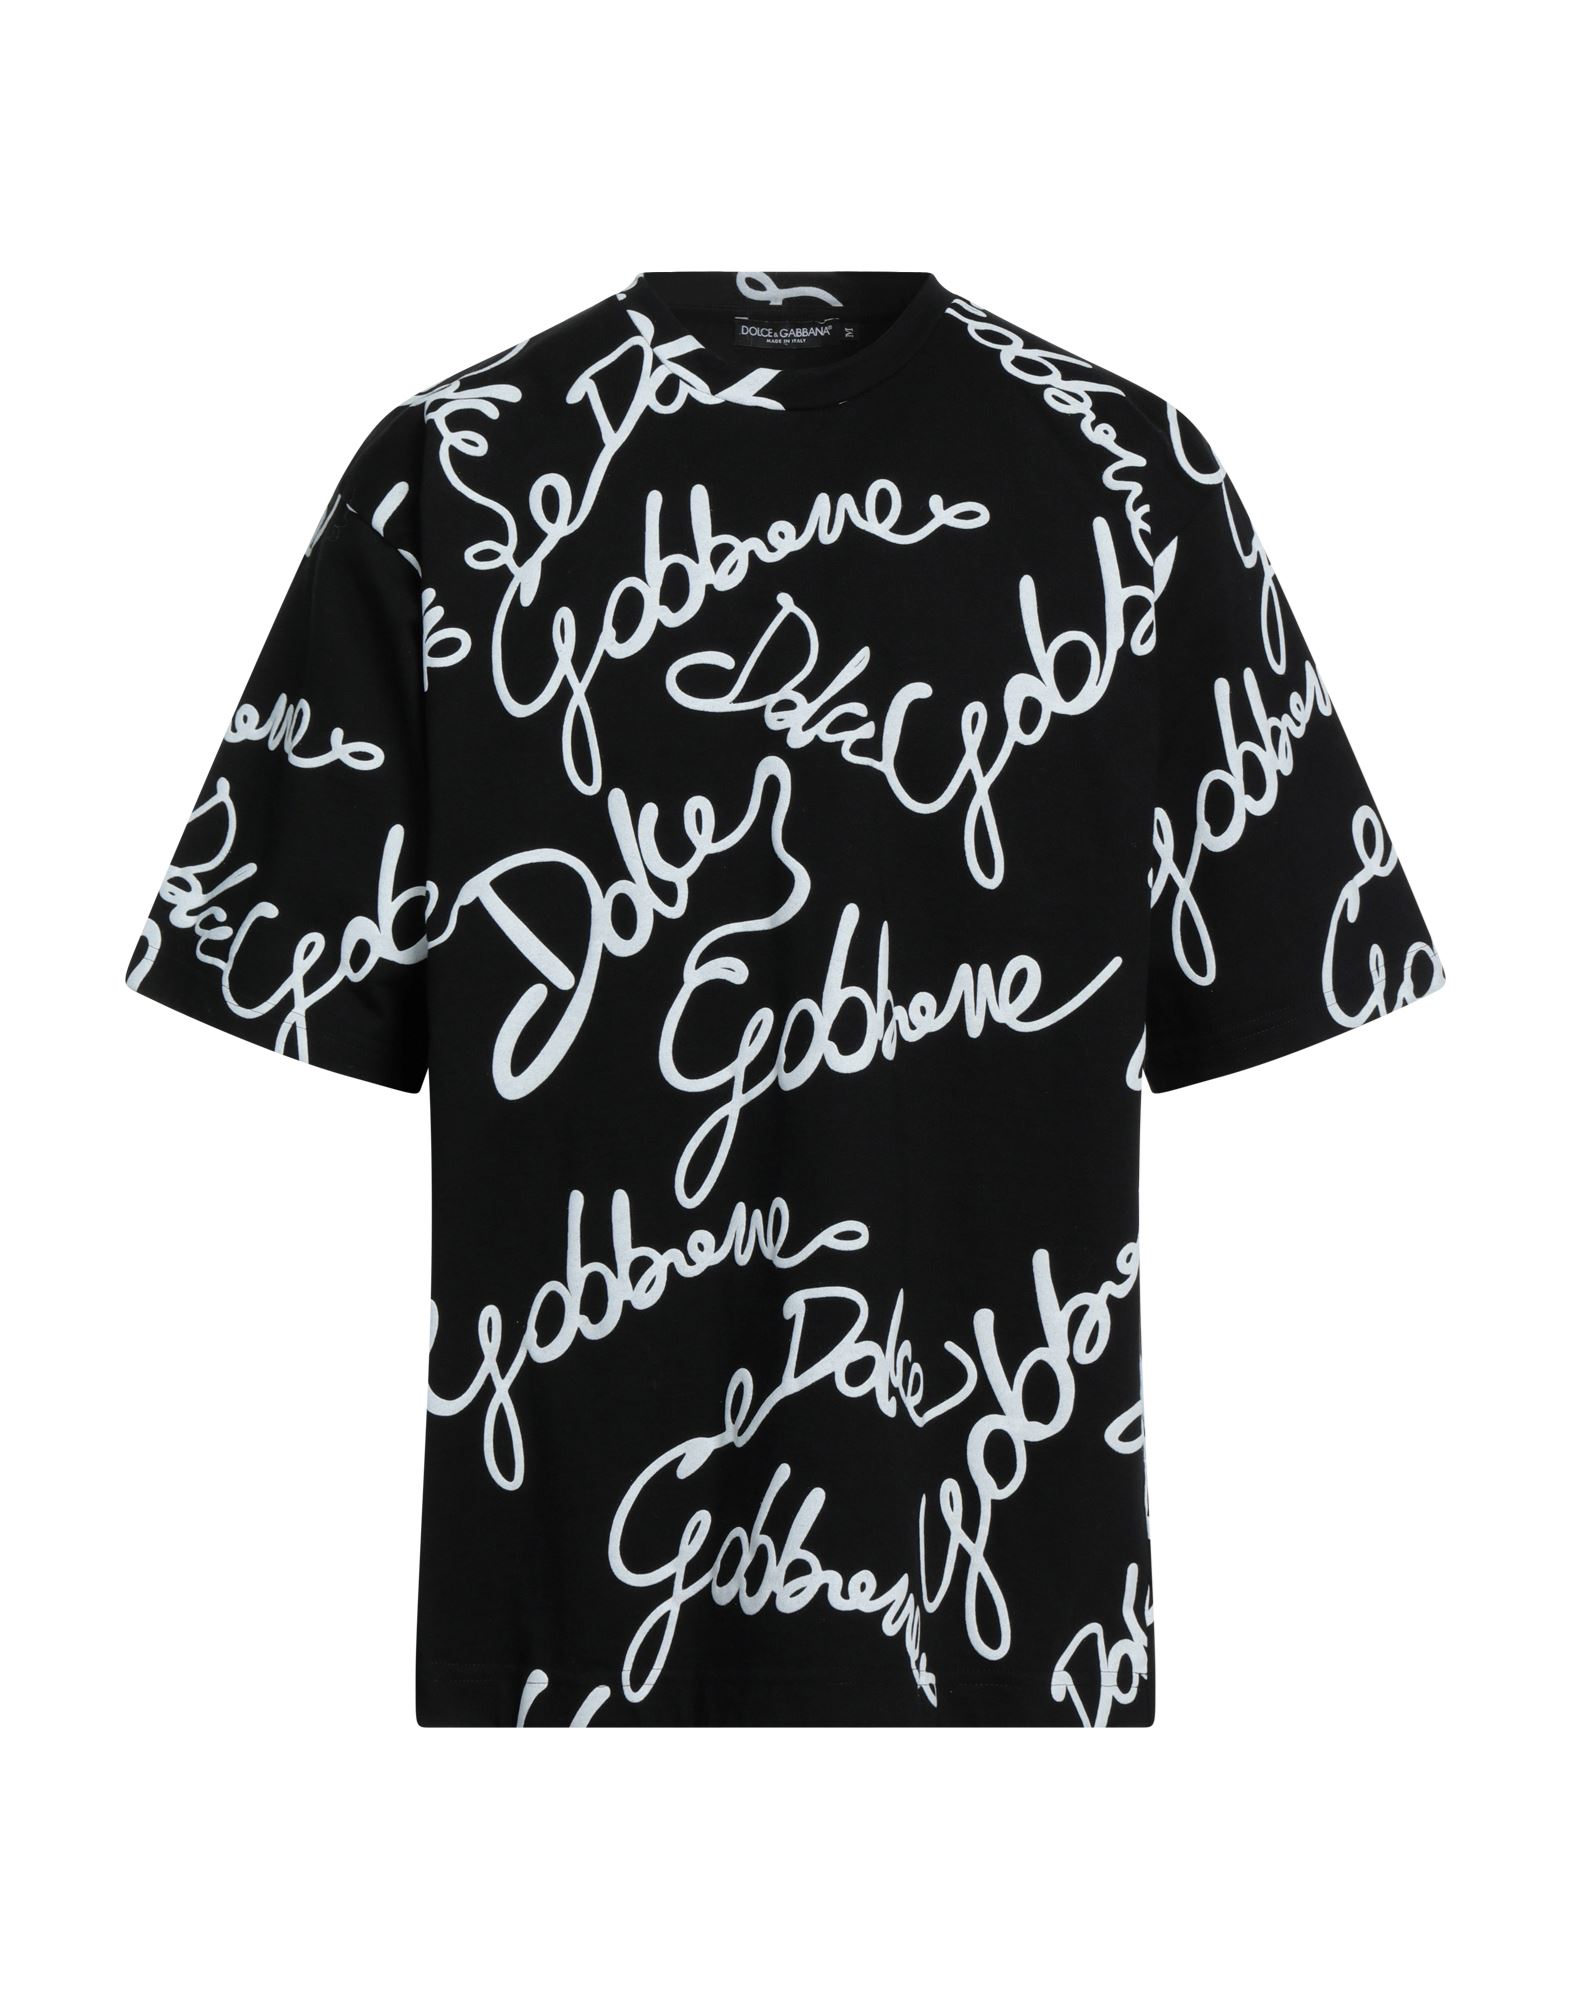 Dolce & Gabbana T-shirts In Black